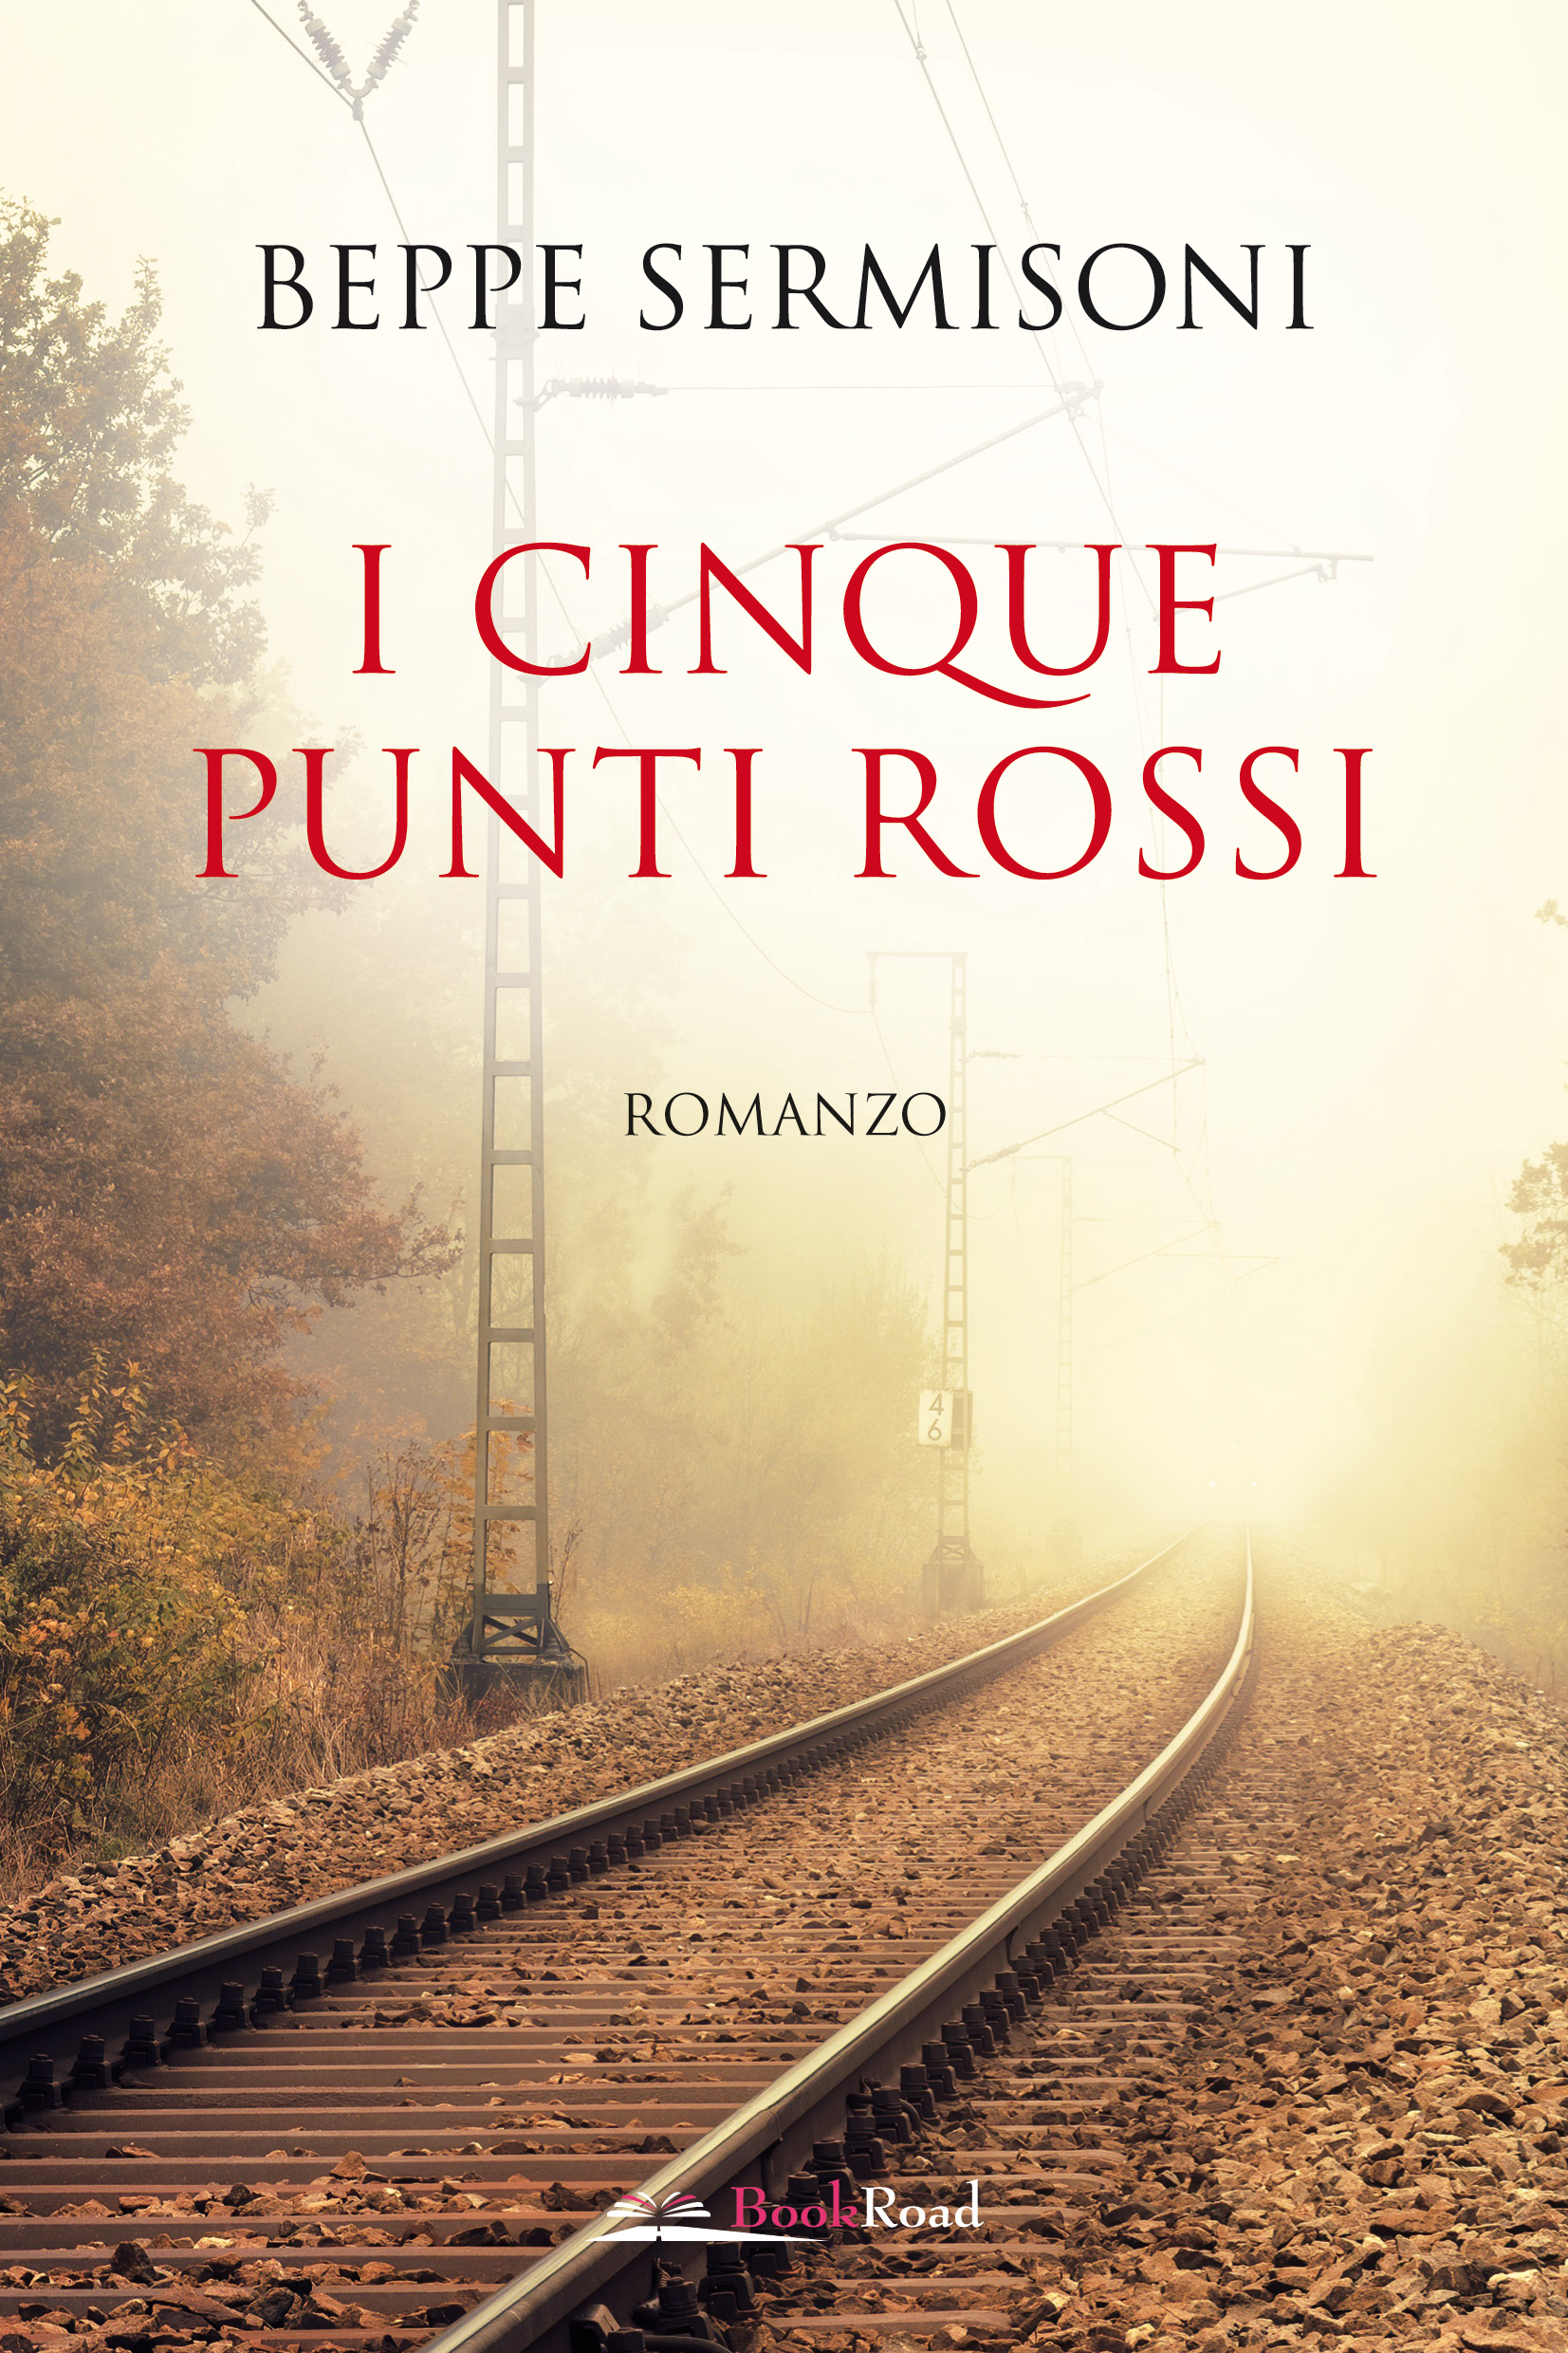 In libreria dal 29 marzo I cinque punti rossi il romanzo di Beppe Sermisoni per BookRoad